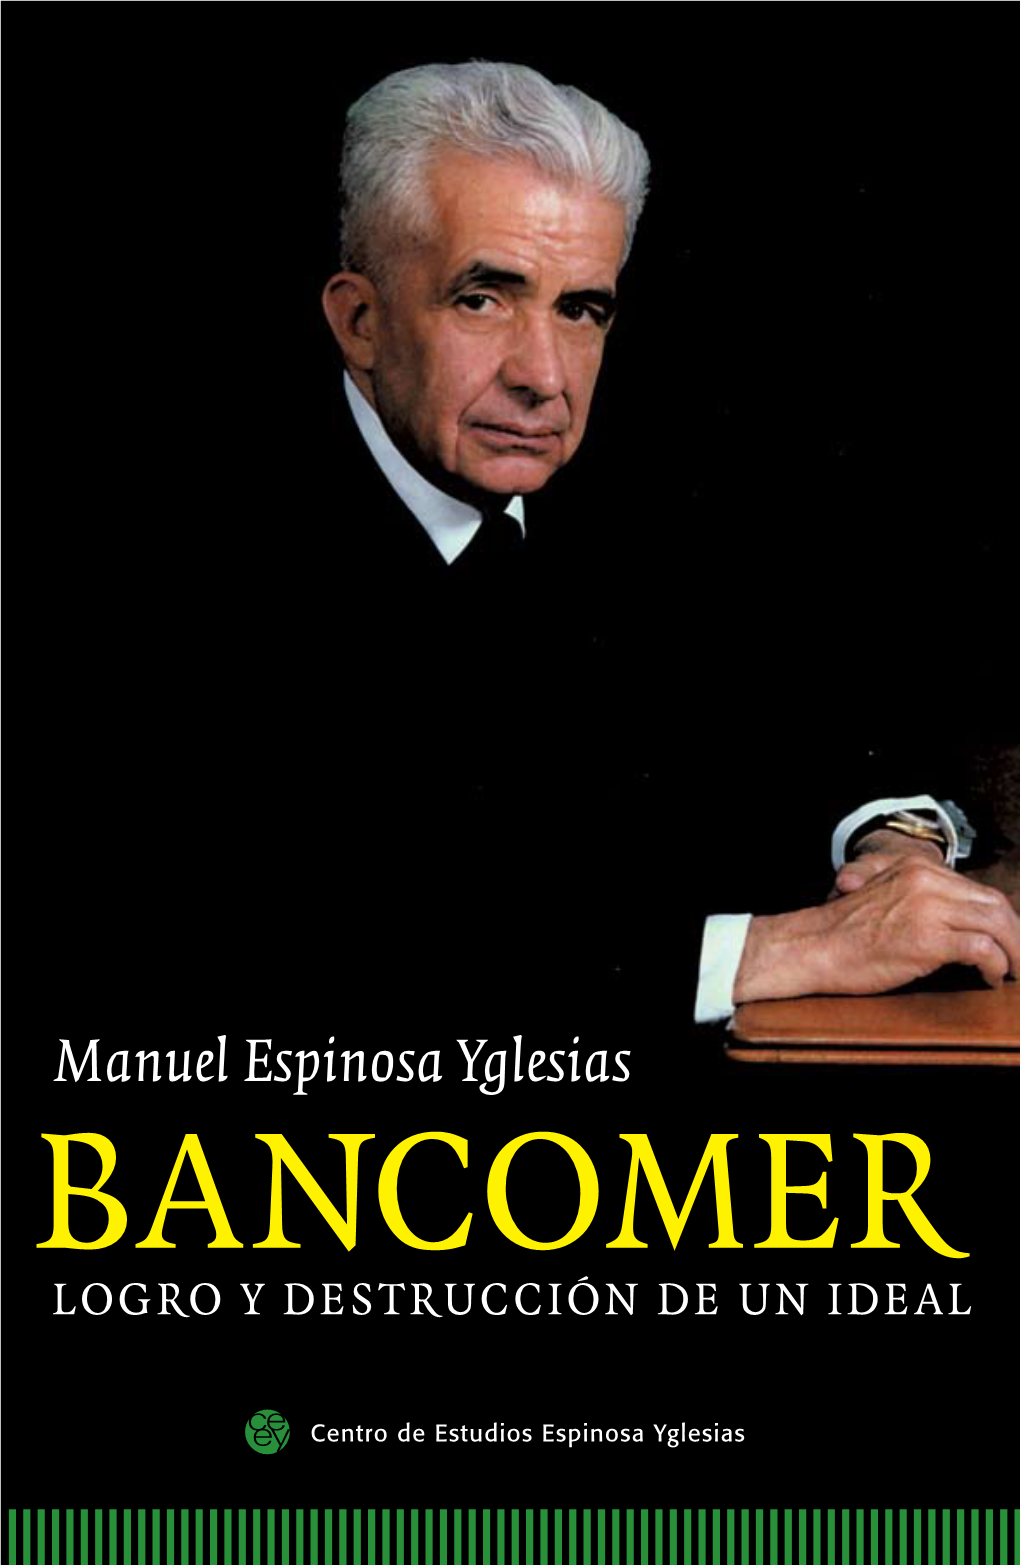 Manuel Espinosa Yglesias BANCOMER LOGRO Y DESTRUCCIÓN DE UN IDEAL